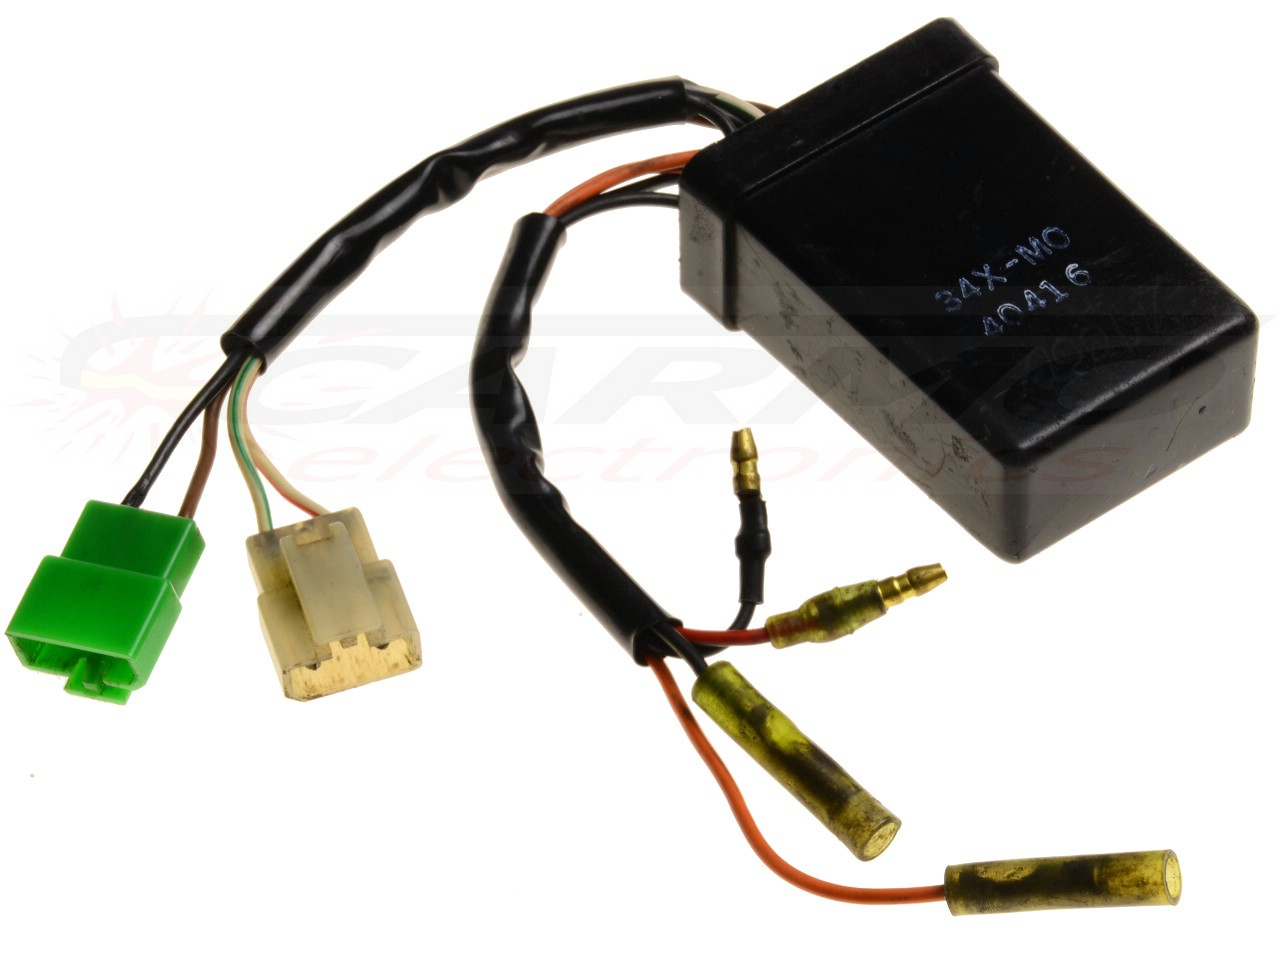 DT125 DT125LC CDI dispositif de commande boîte noire (57U-MO, 34X-MO, 37F-M1)